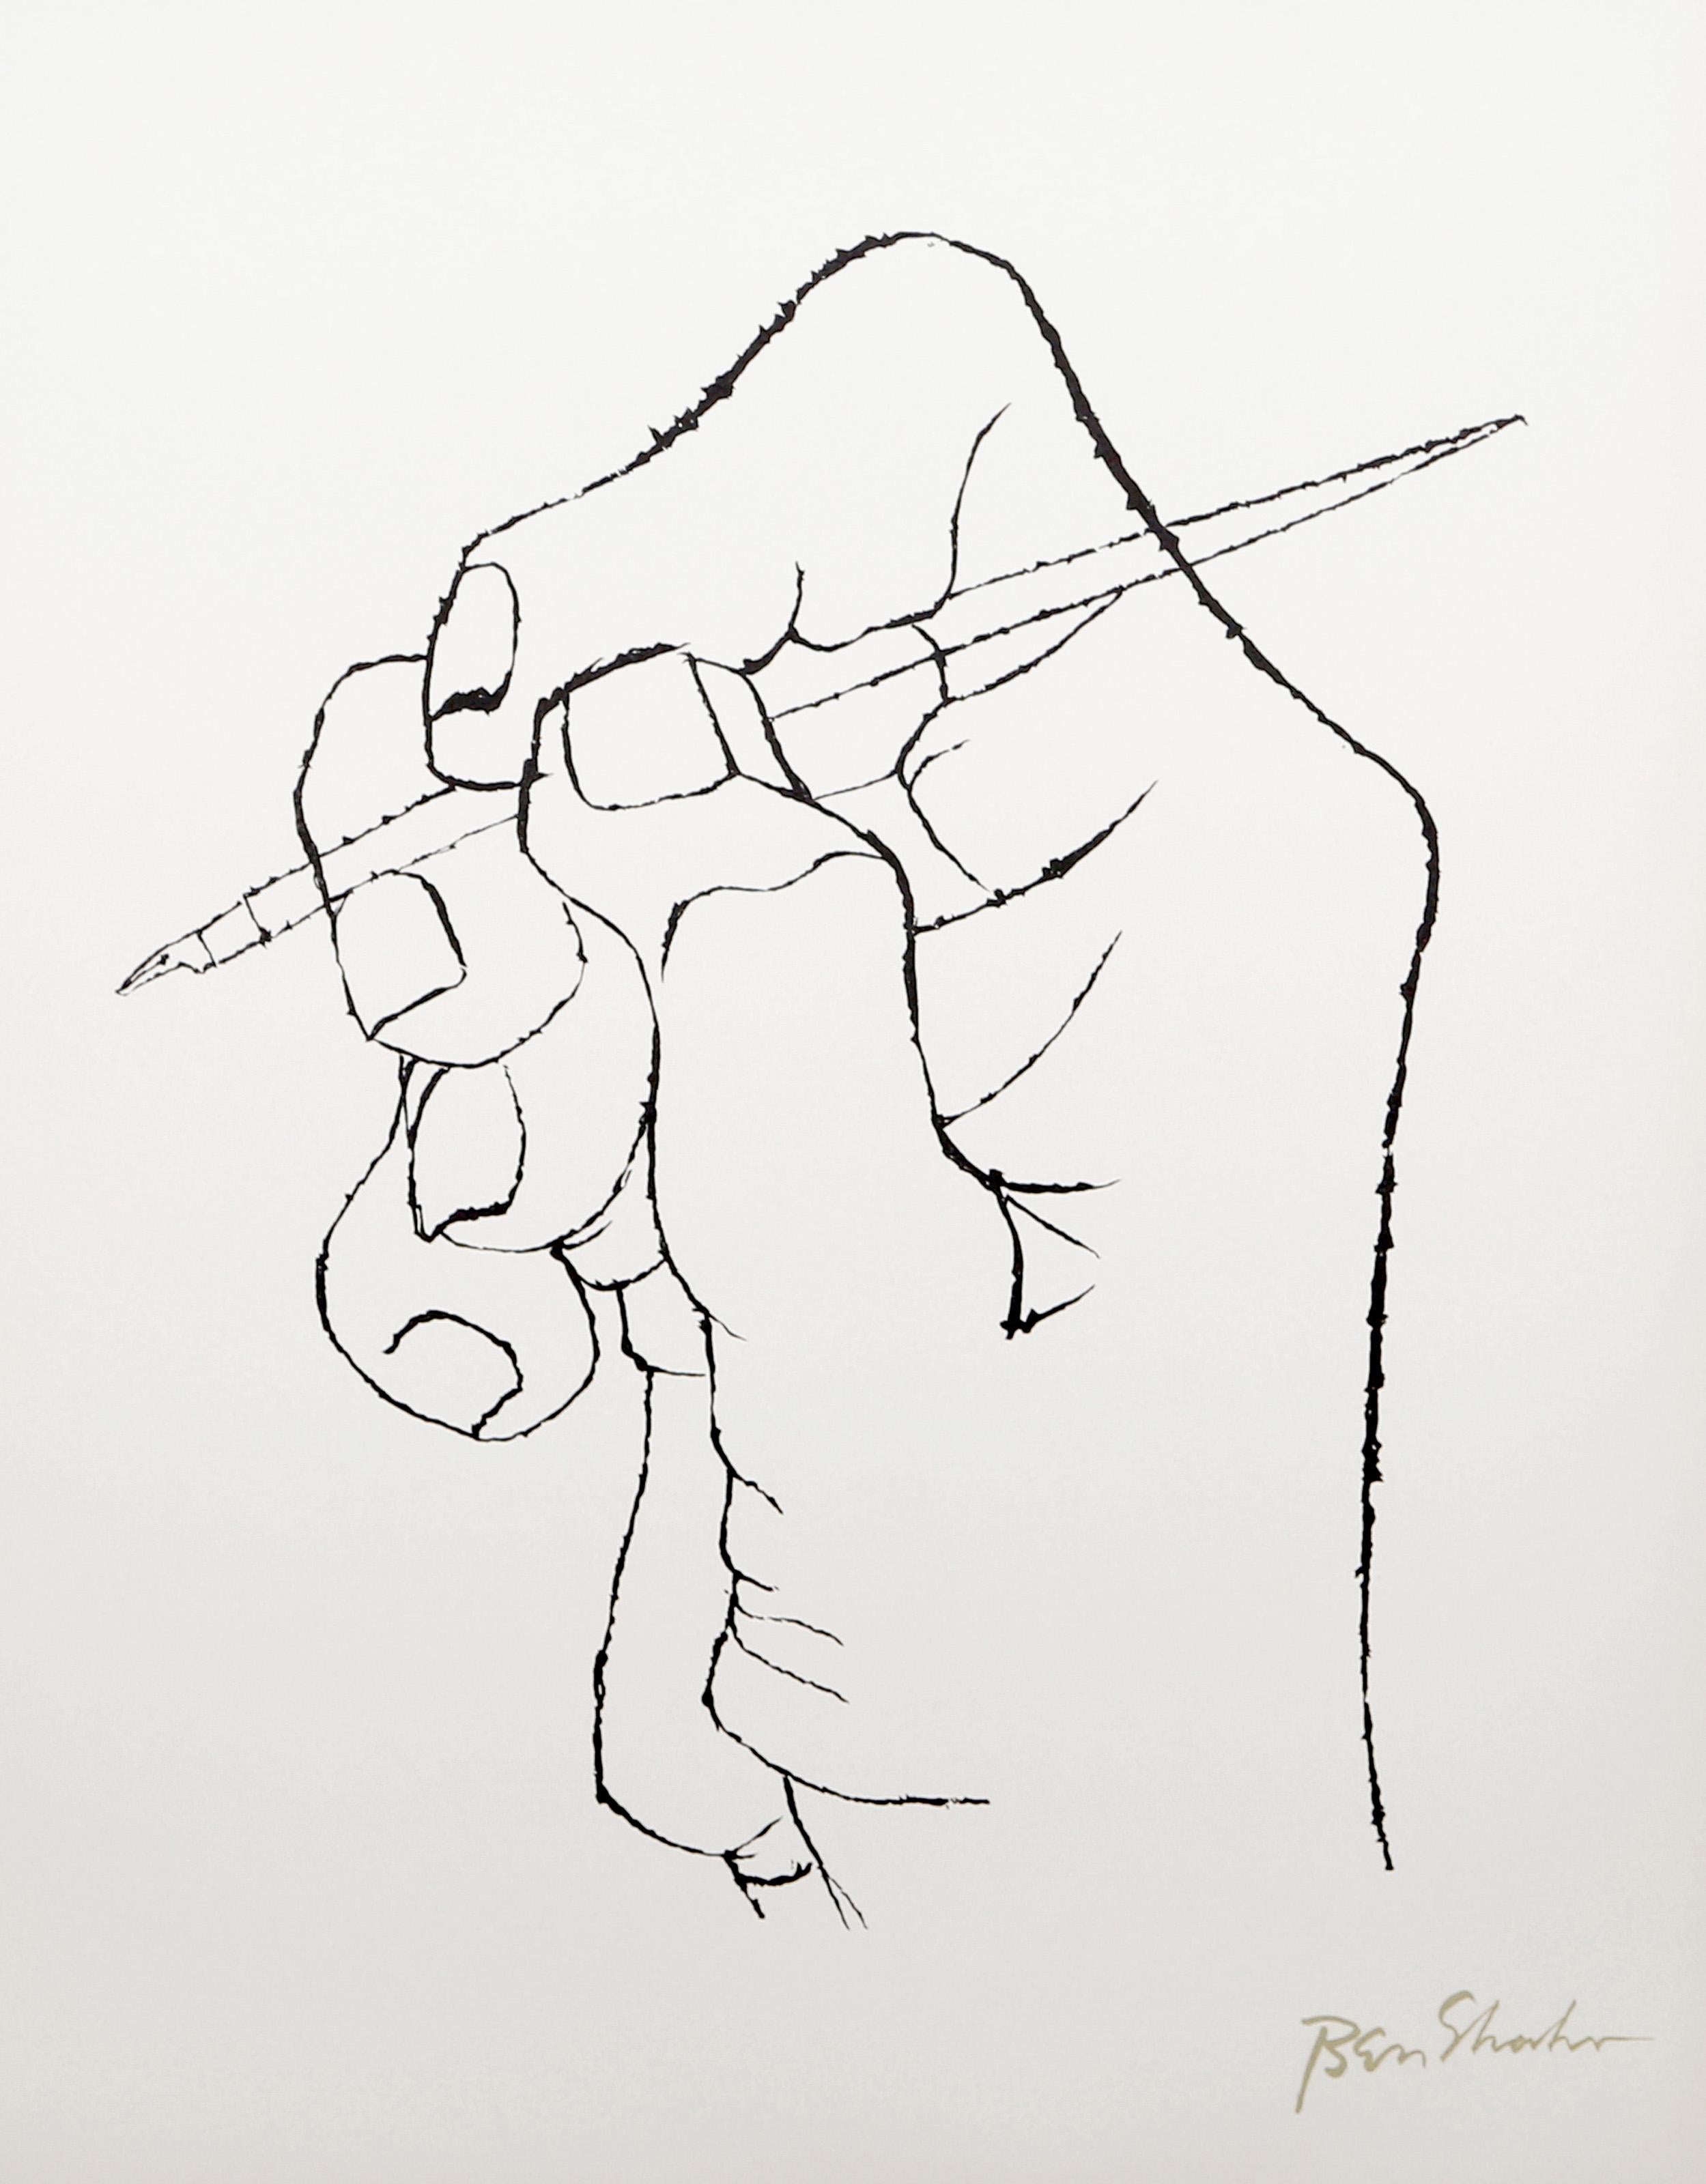 Artistics : Ben Shahn, Américain (1898 - 1969)
Titre : Le premier mot de la poésie surgit du portfolio de Rilke
Année : 1968
Moyen d'expression : Lithographie sur Arches, signée dans la plaque
Edition : 750
Taille : 22.5 x 17.75 in. (57.15 x 45.09